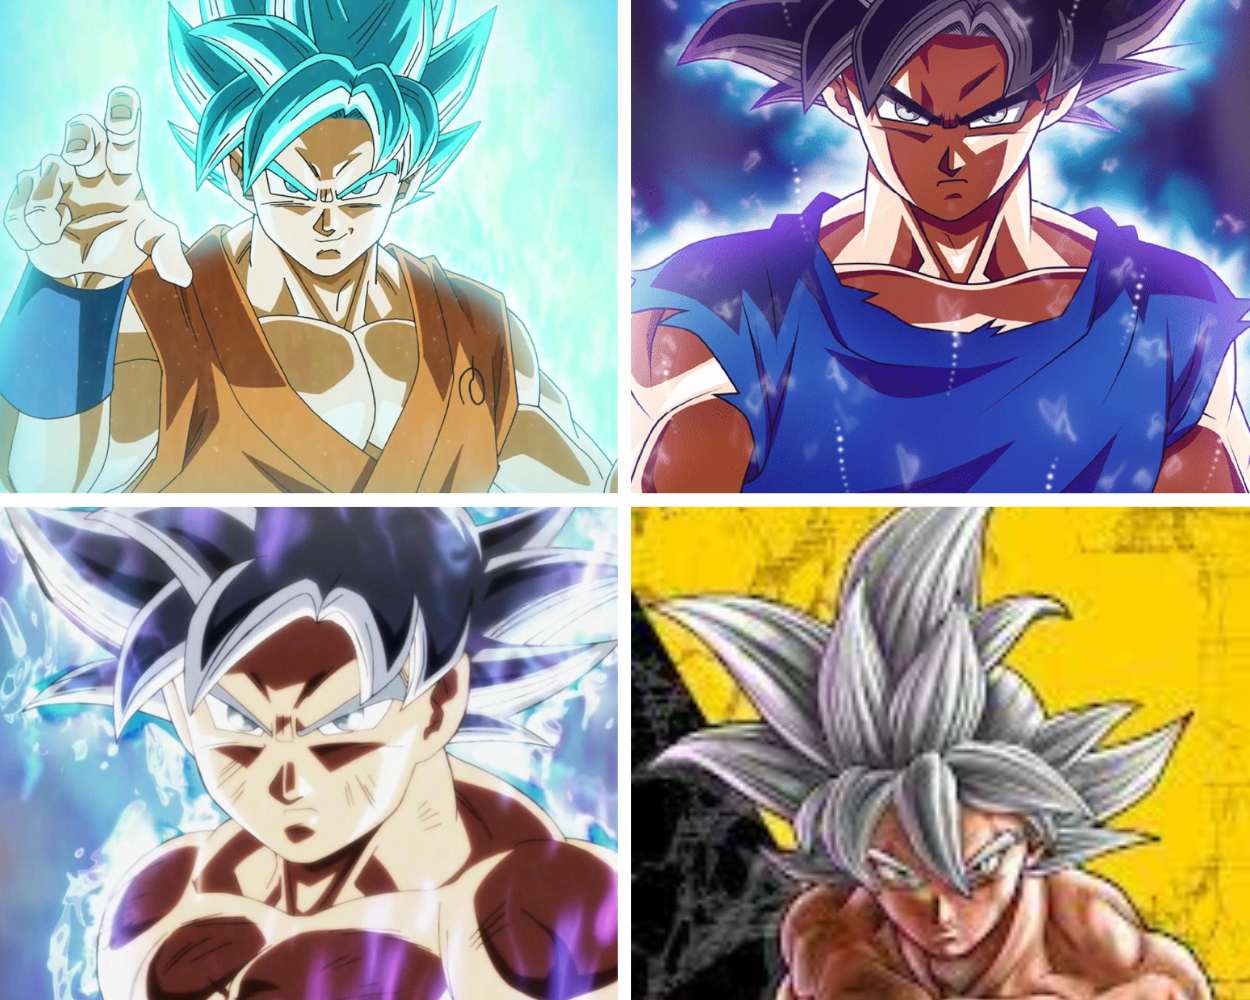 Goku - Powerful Spikey Hair